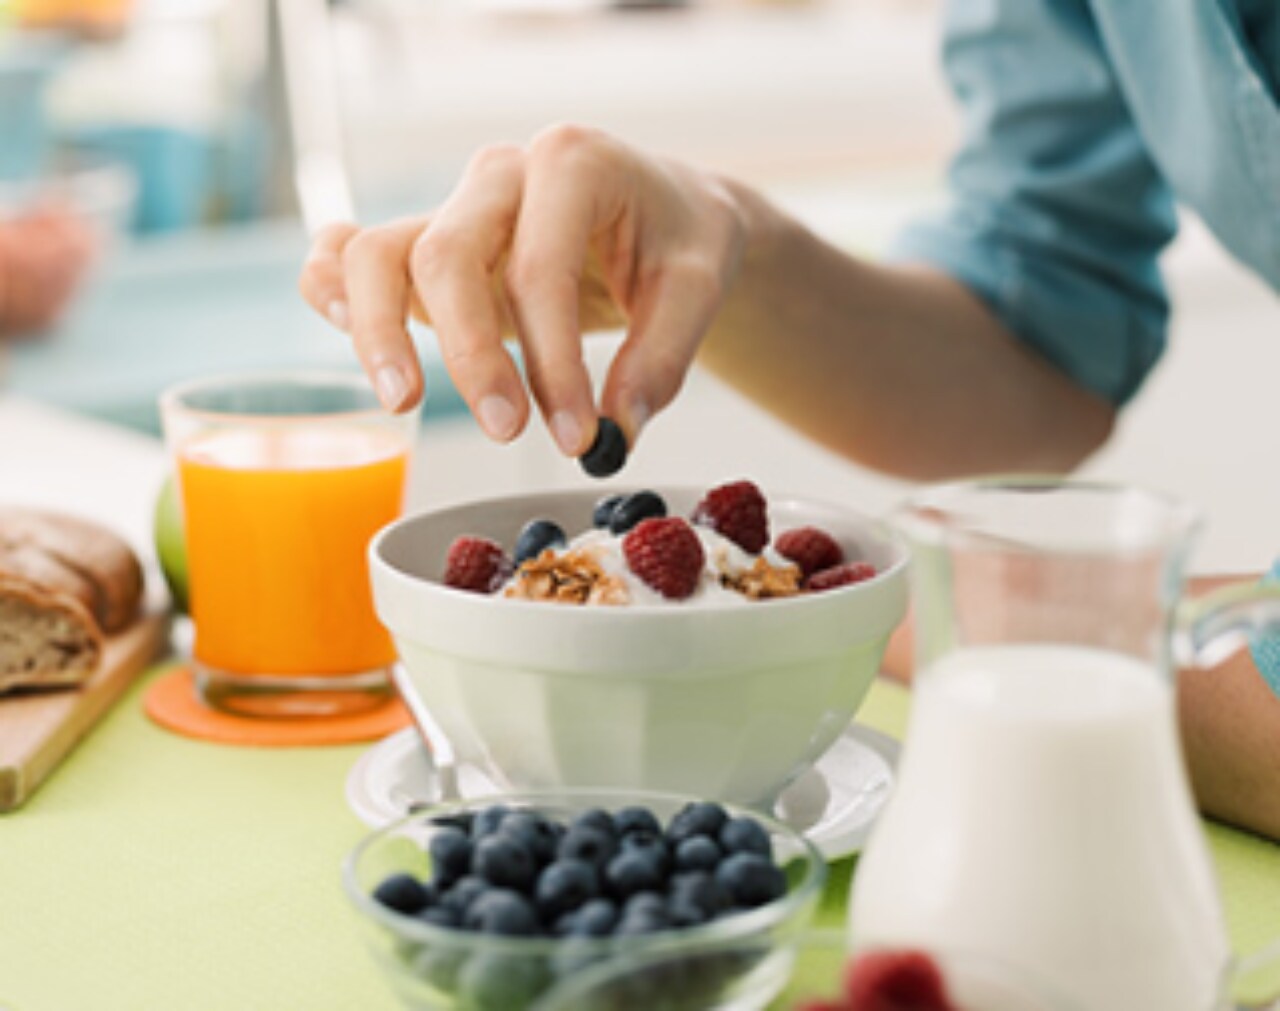 Foto de una mesa en la que hay tazones de fruta, un vaso con zumo de naranja y un bote con yogur. Hay una mano recogiendo frutas de uno de los tazones.